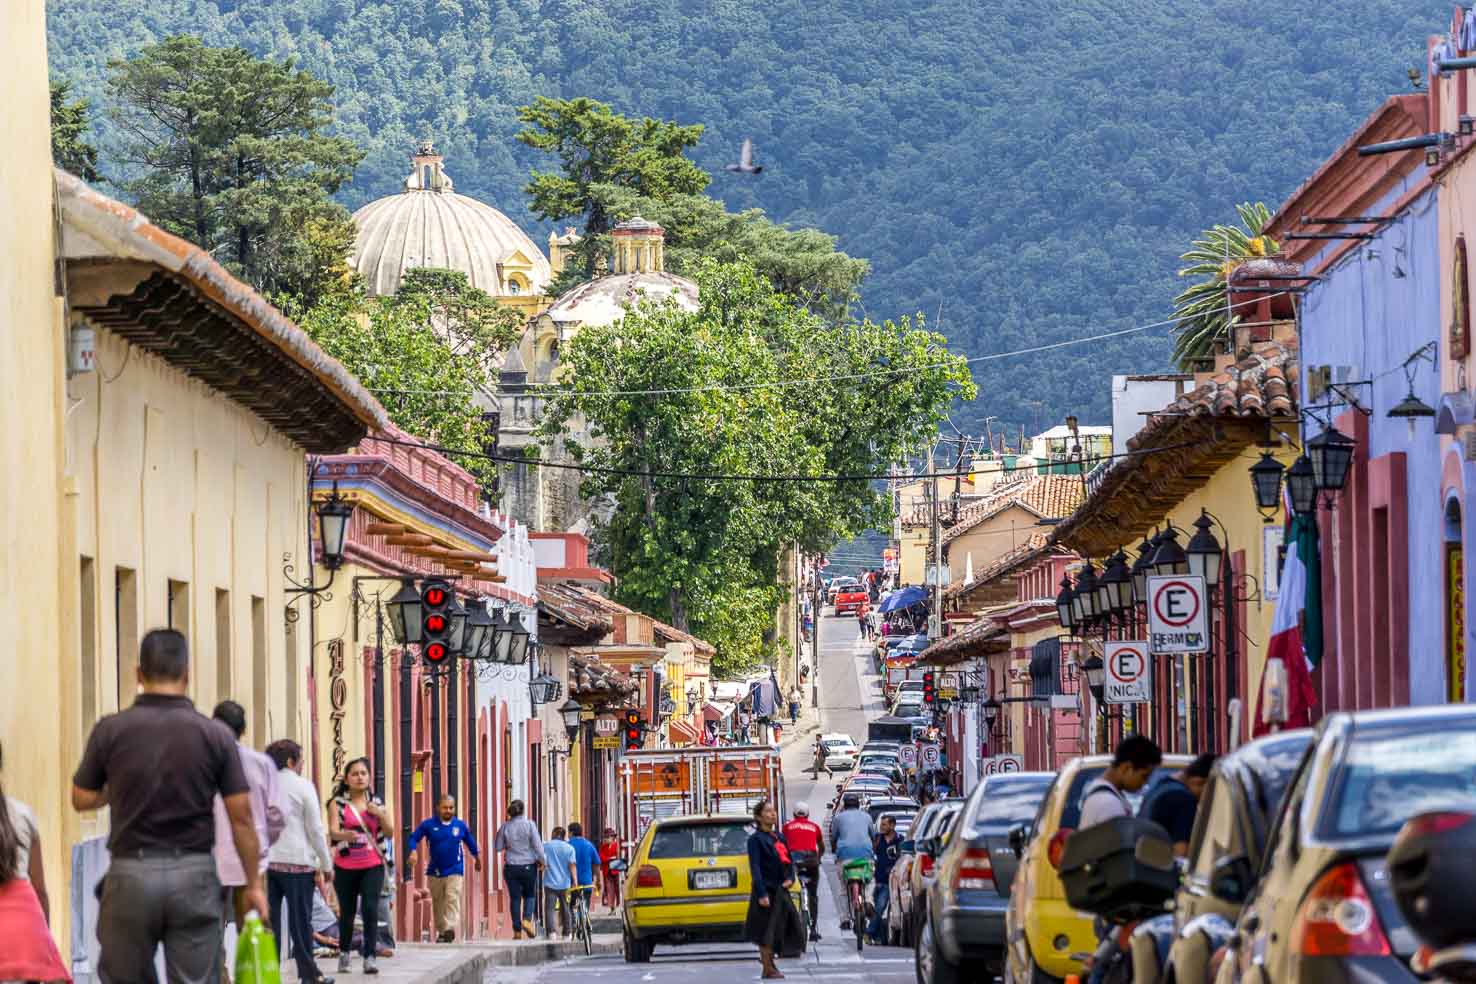 Streets of San Cristobal de las Casas, Mexico